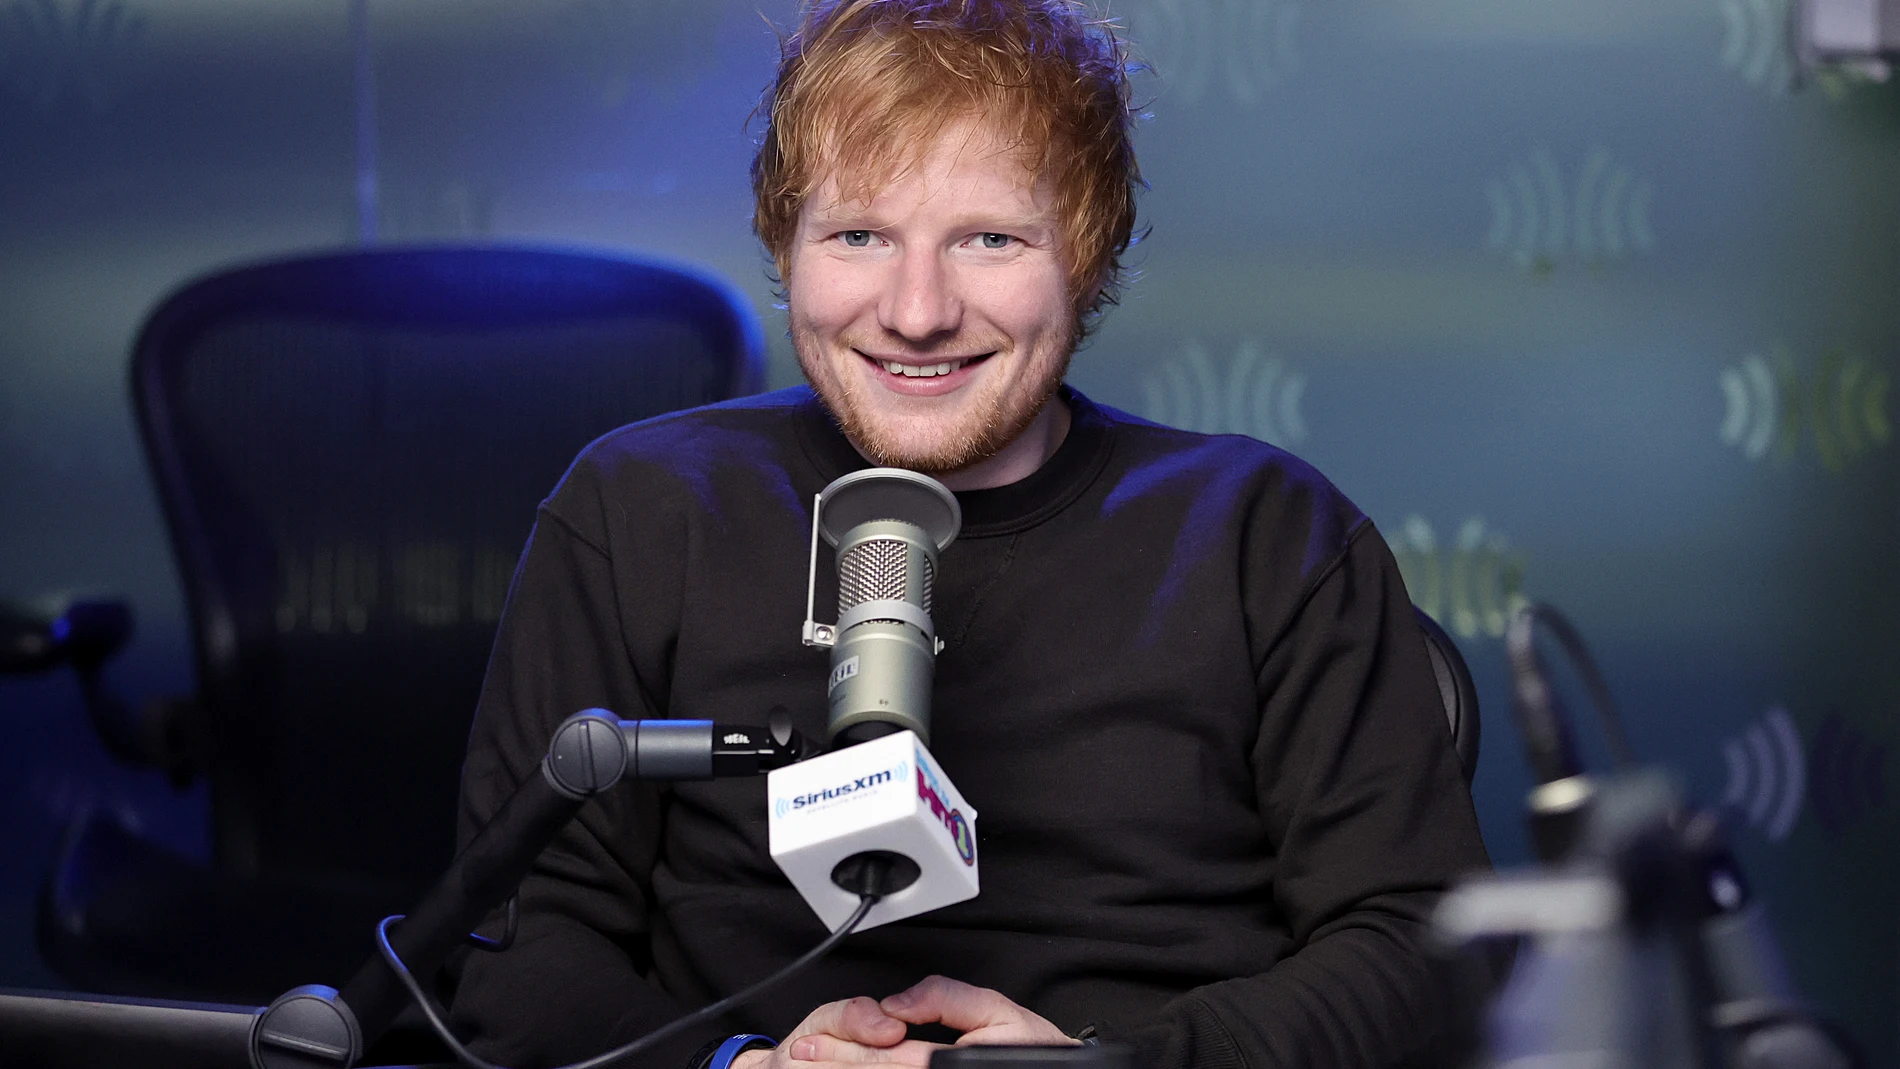 Ed Sheeran vuelve a las redes sociales tras experimentar "cosas turbulentas" en su vida personal